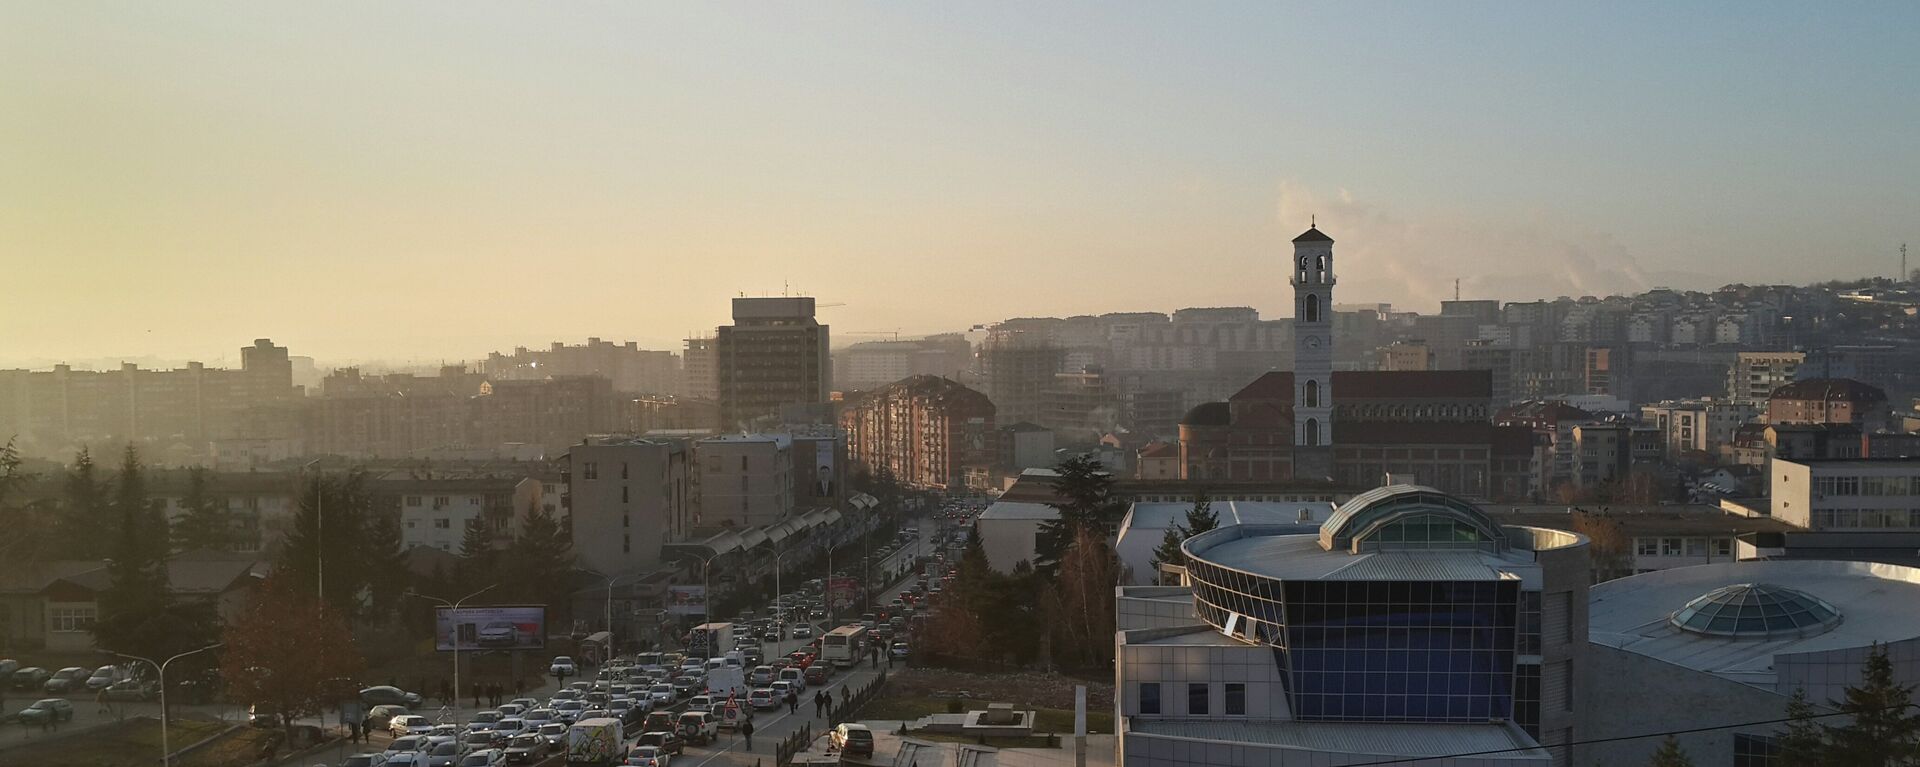 Pristina, la capital de Kosovo - Sputnik Mundo, 1920, 25.12.2017